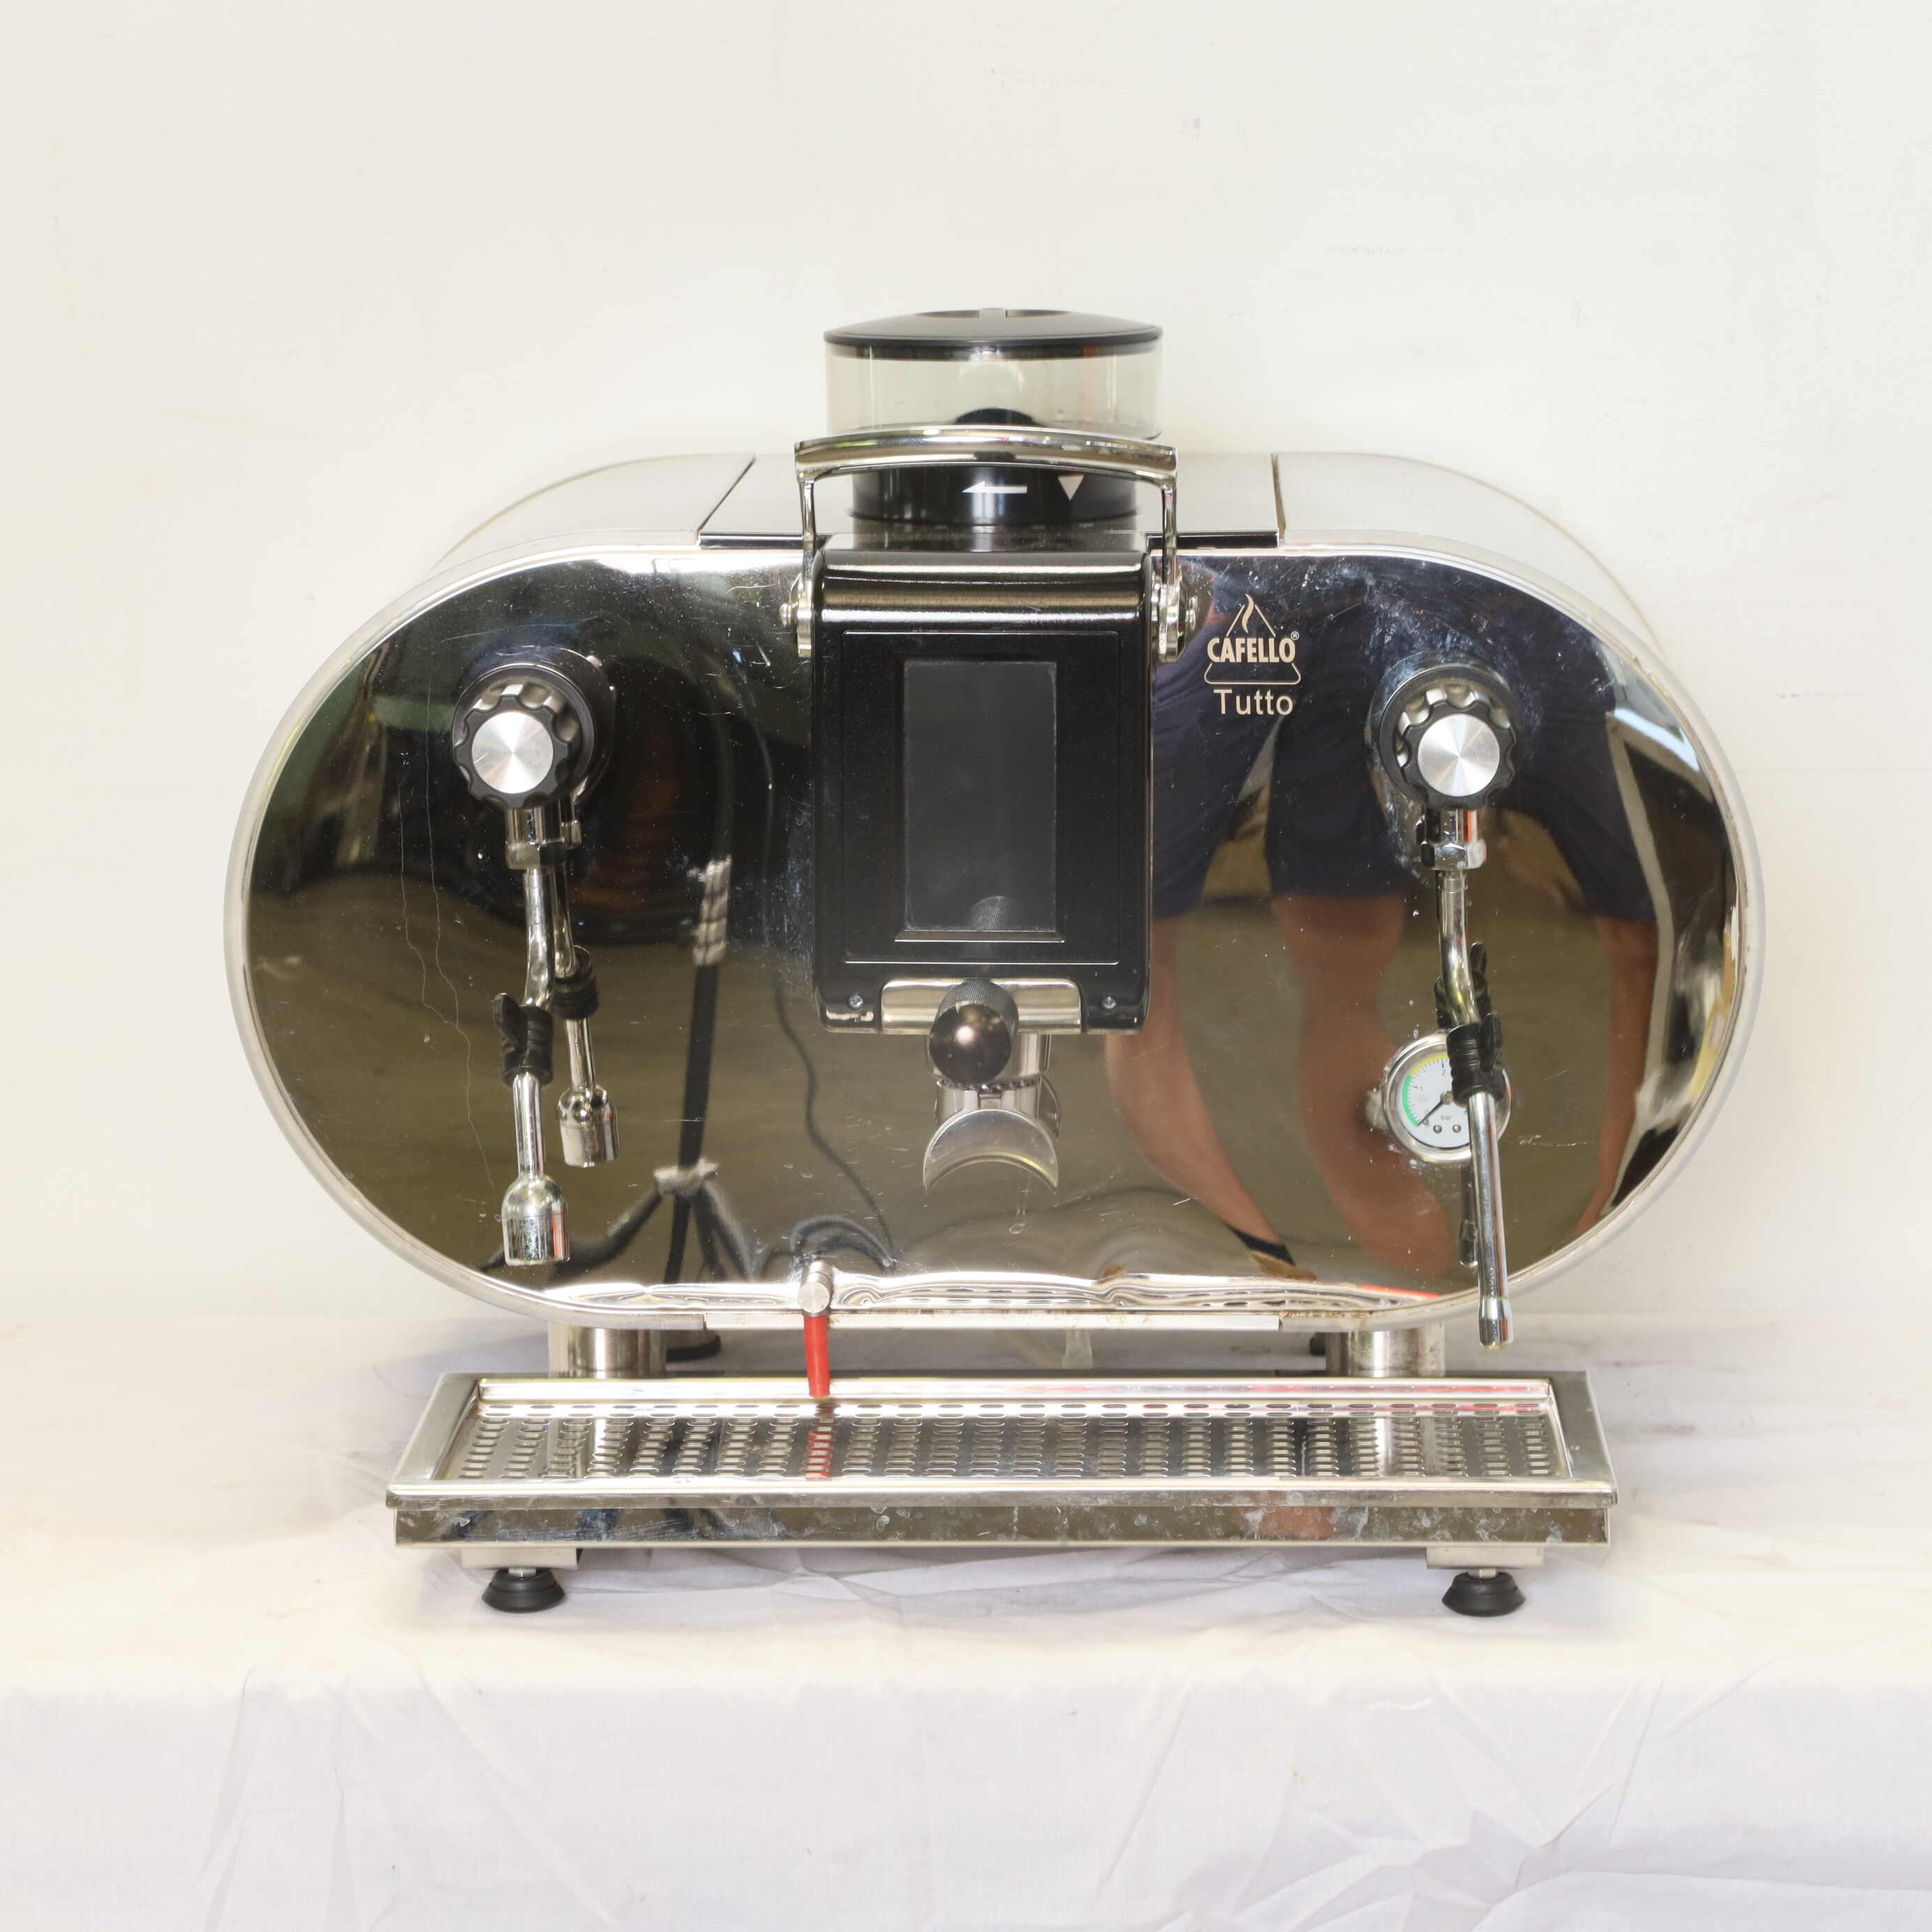 Thumbnail - Cafello Tutto - 1 Group Coffee Machine (3)